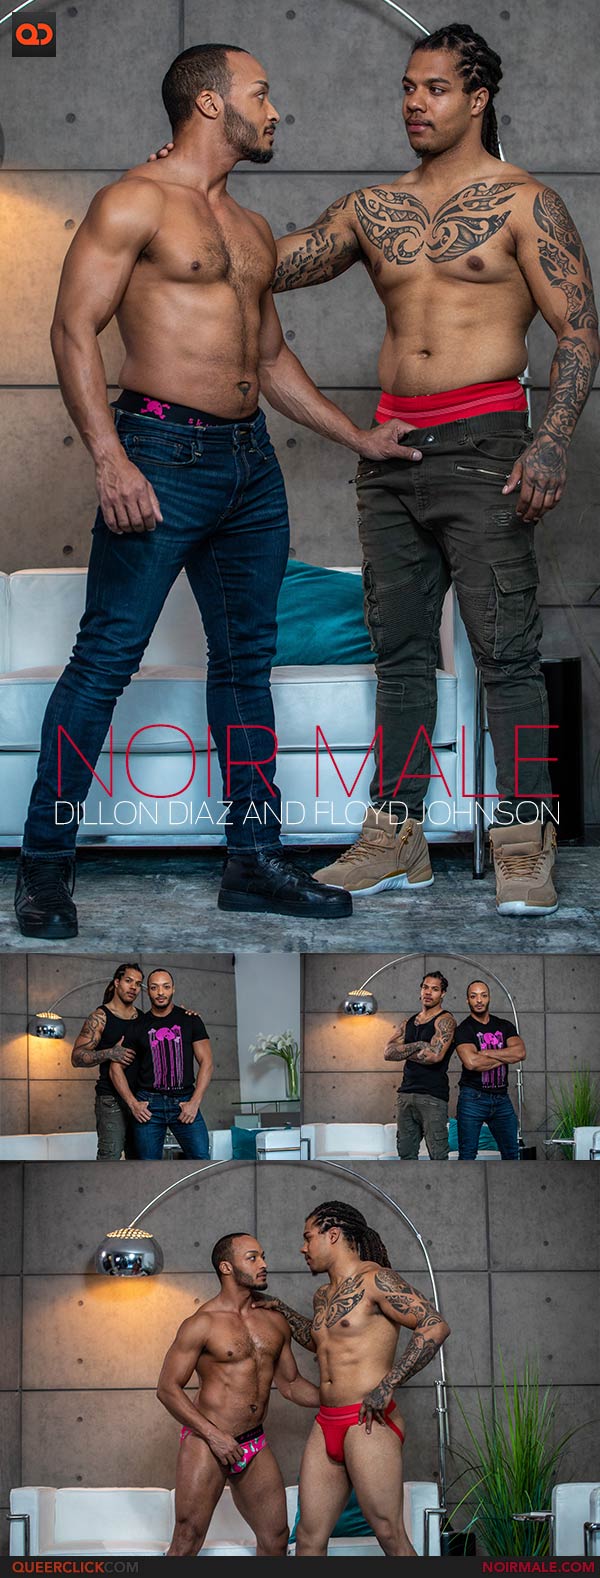 NoirMale: Dillon Diaz and Floyd Johnson